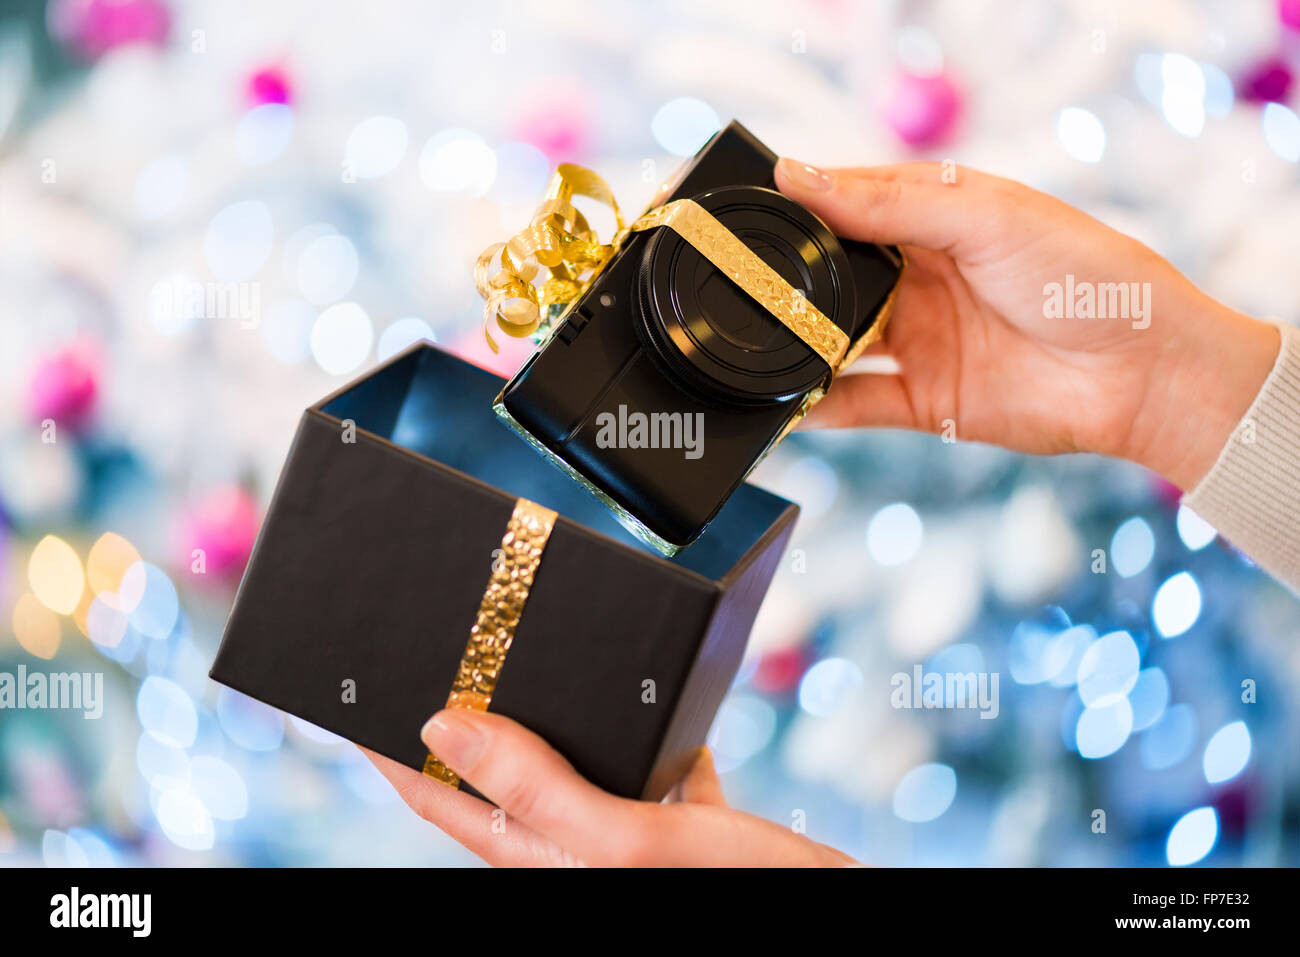 Femme découvre un appareil photo compact numérique en cadeau de Noël. Arrière-plan de l'arbre de Noël Boke Banque D'Images